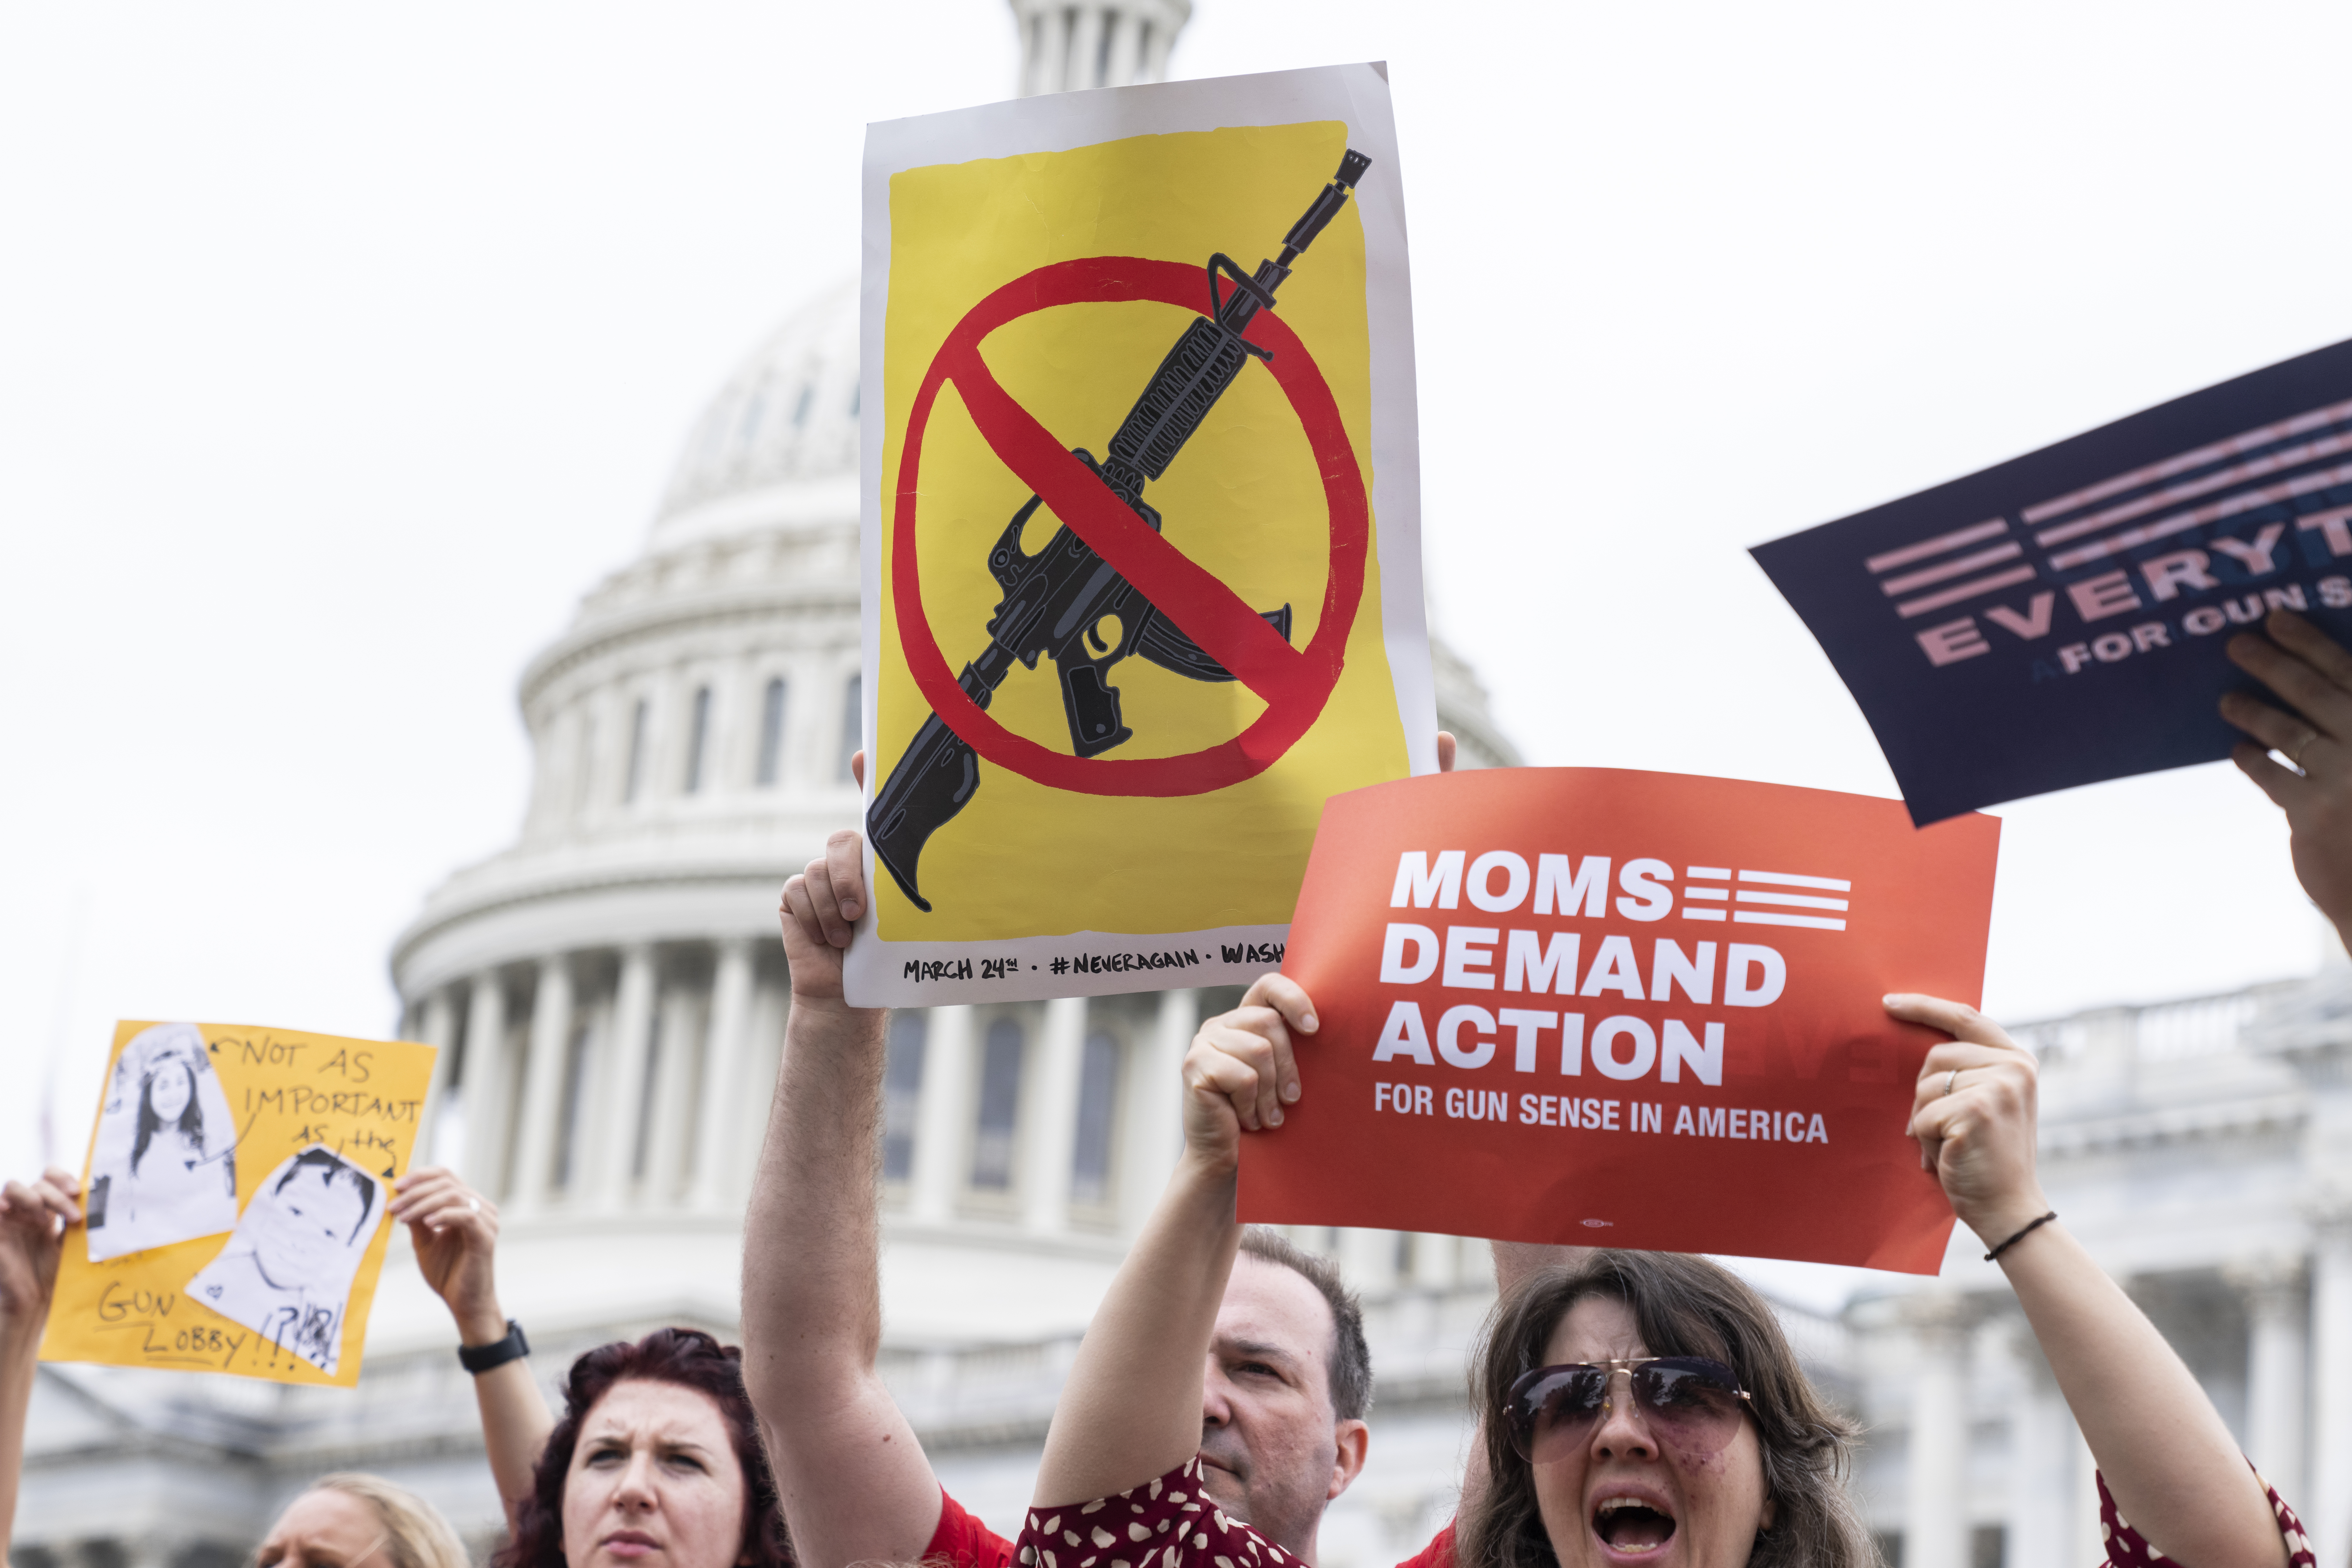 Republicans shut down domestic terrorism bill, gun policy debate in Senate